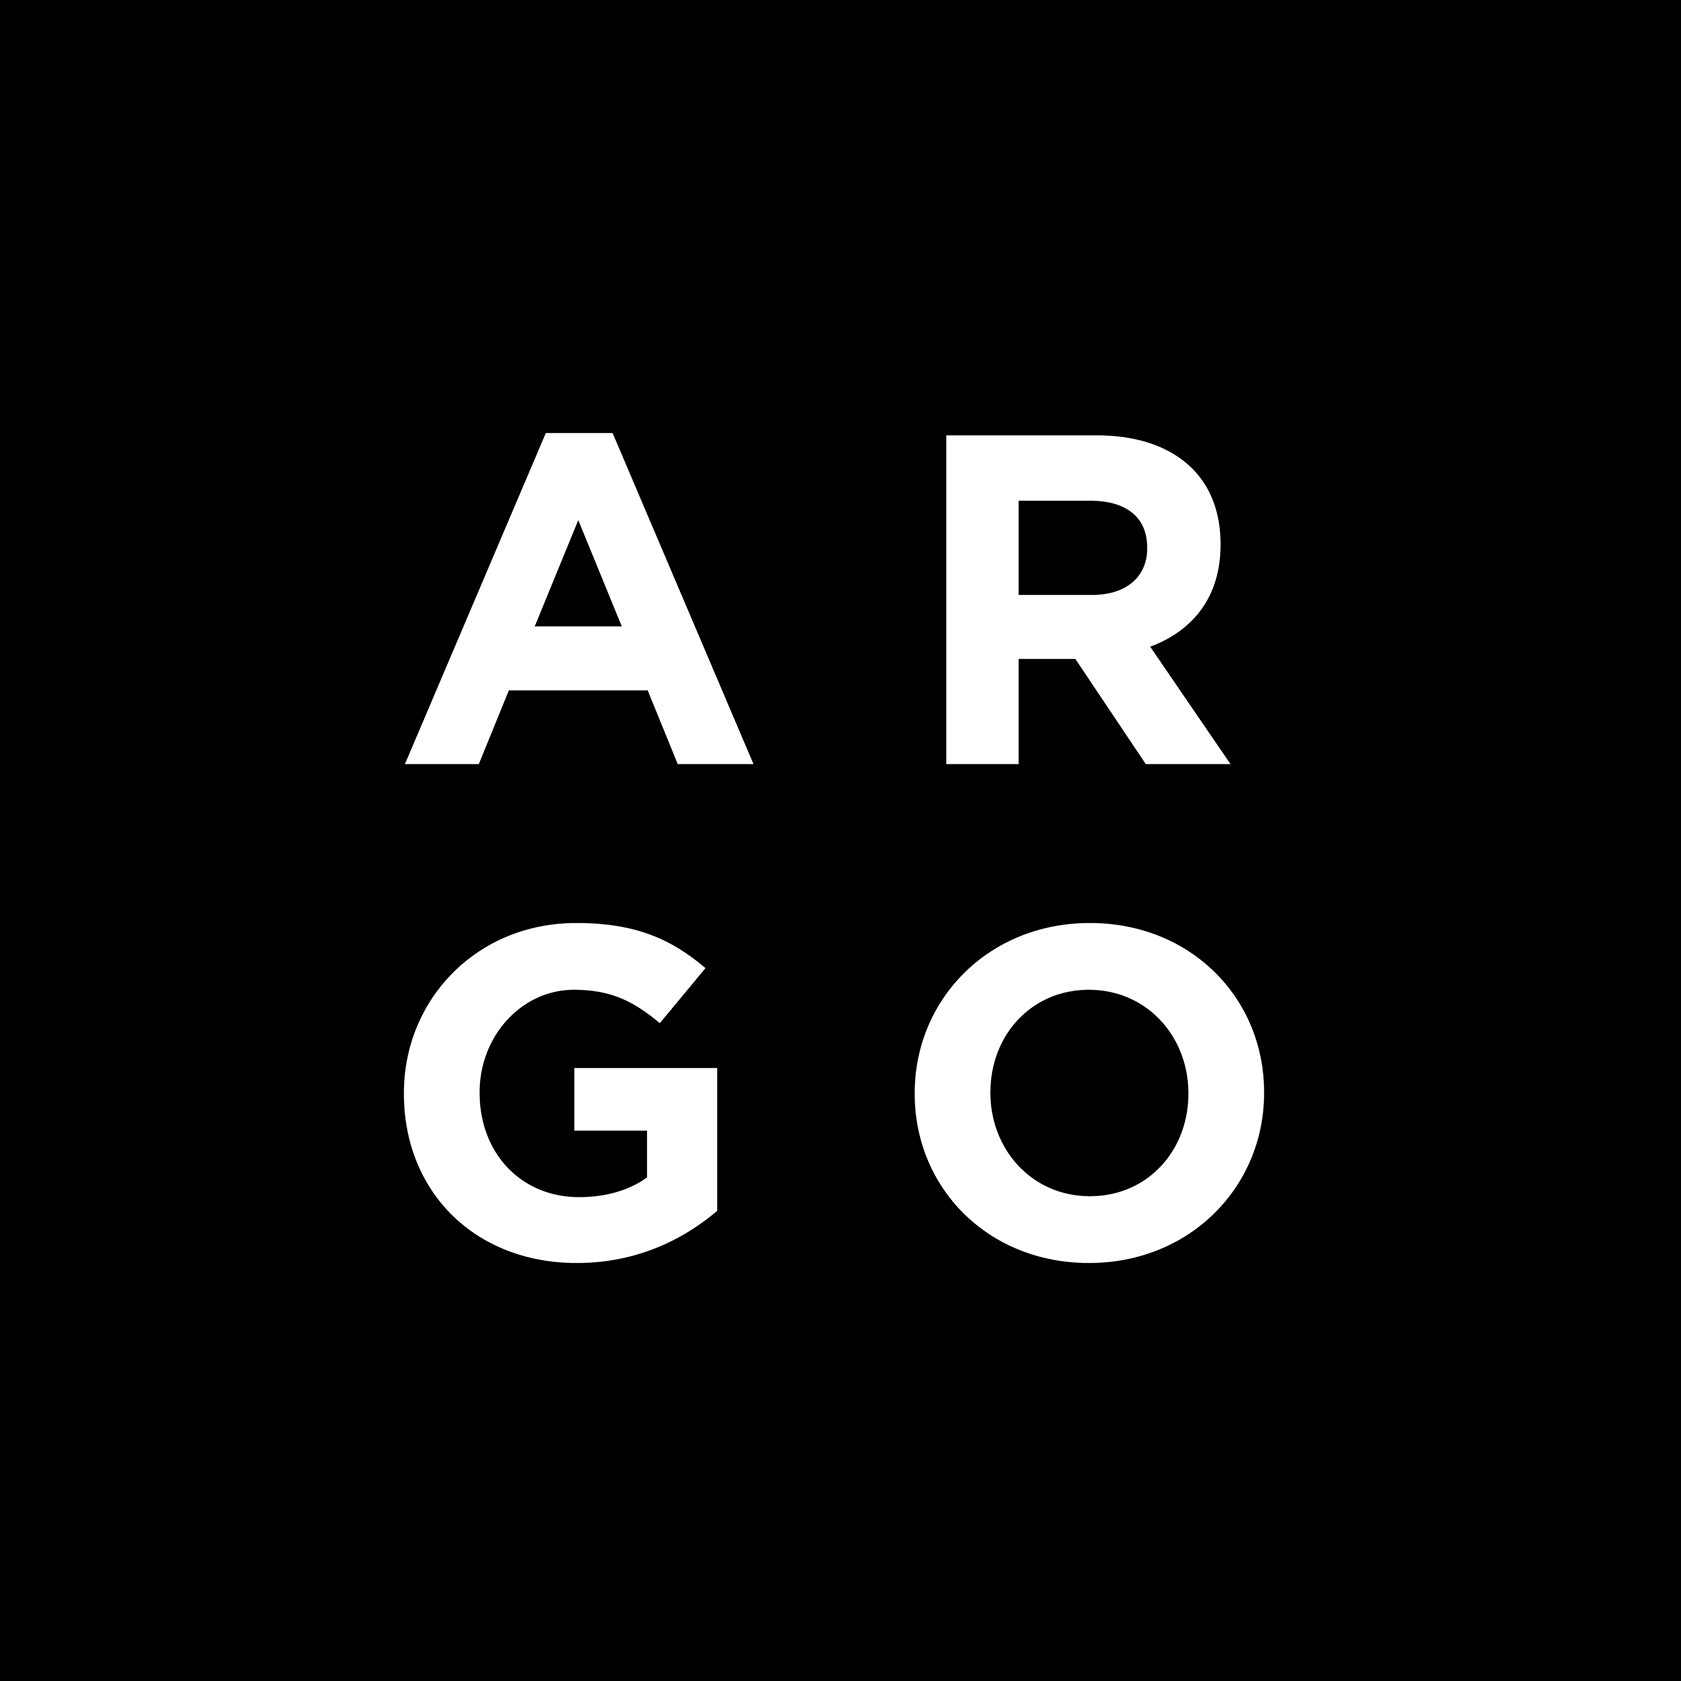 ARGO: Client Outreach